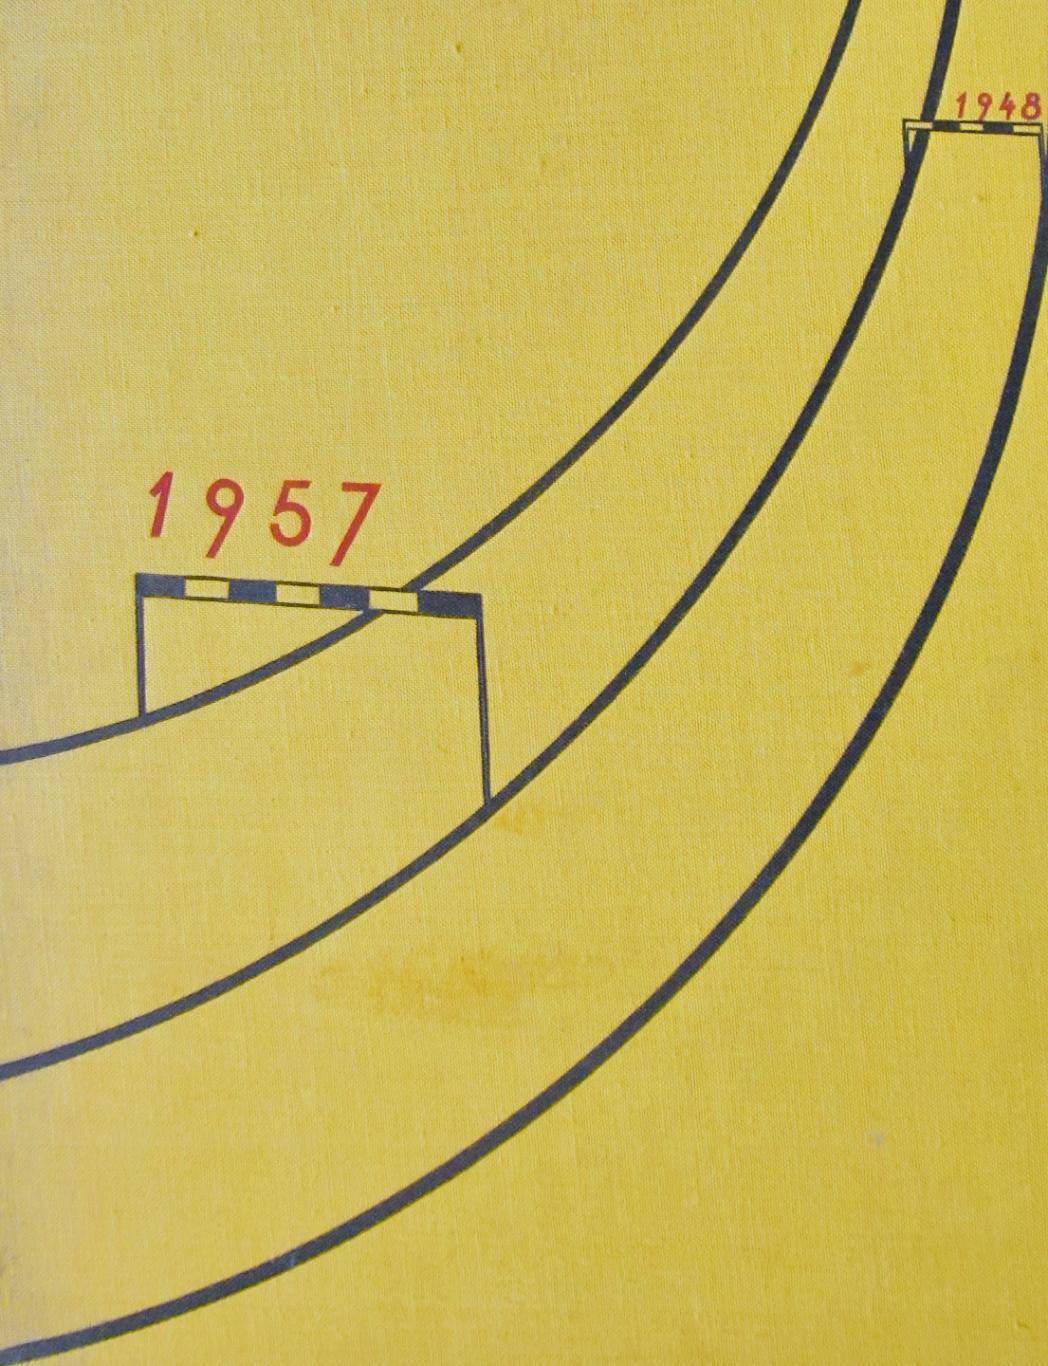 Спортивная слава (1948-1957). Фотоальбом о чешском спорте.